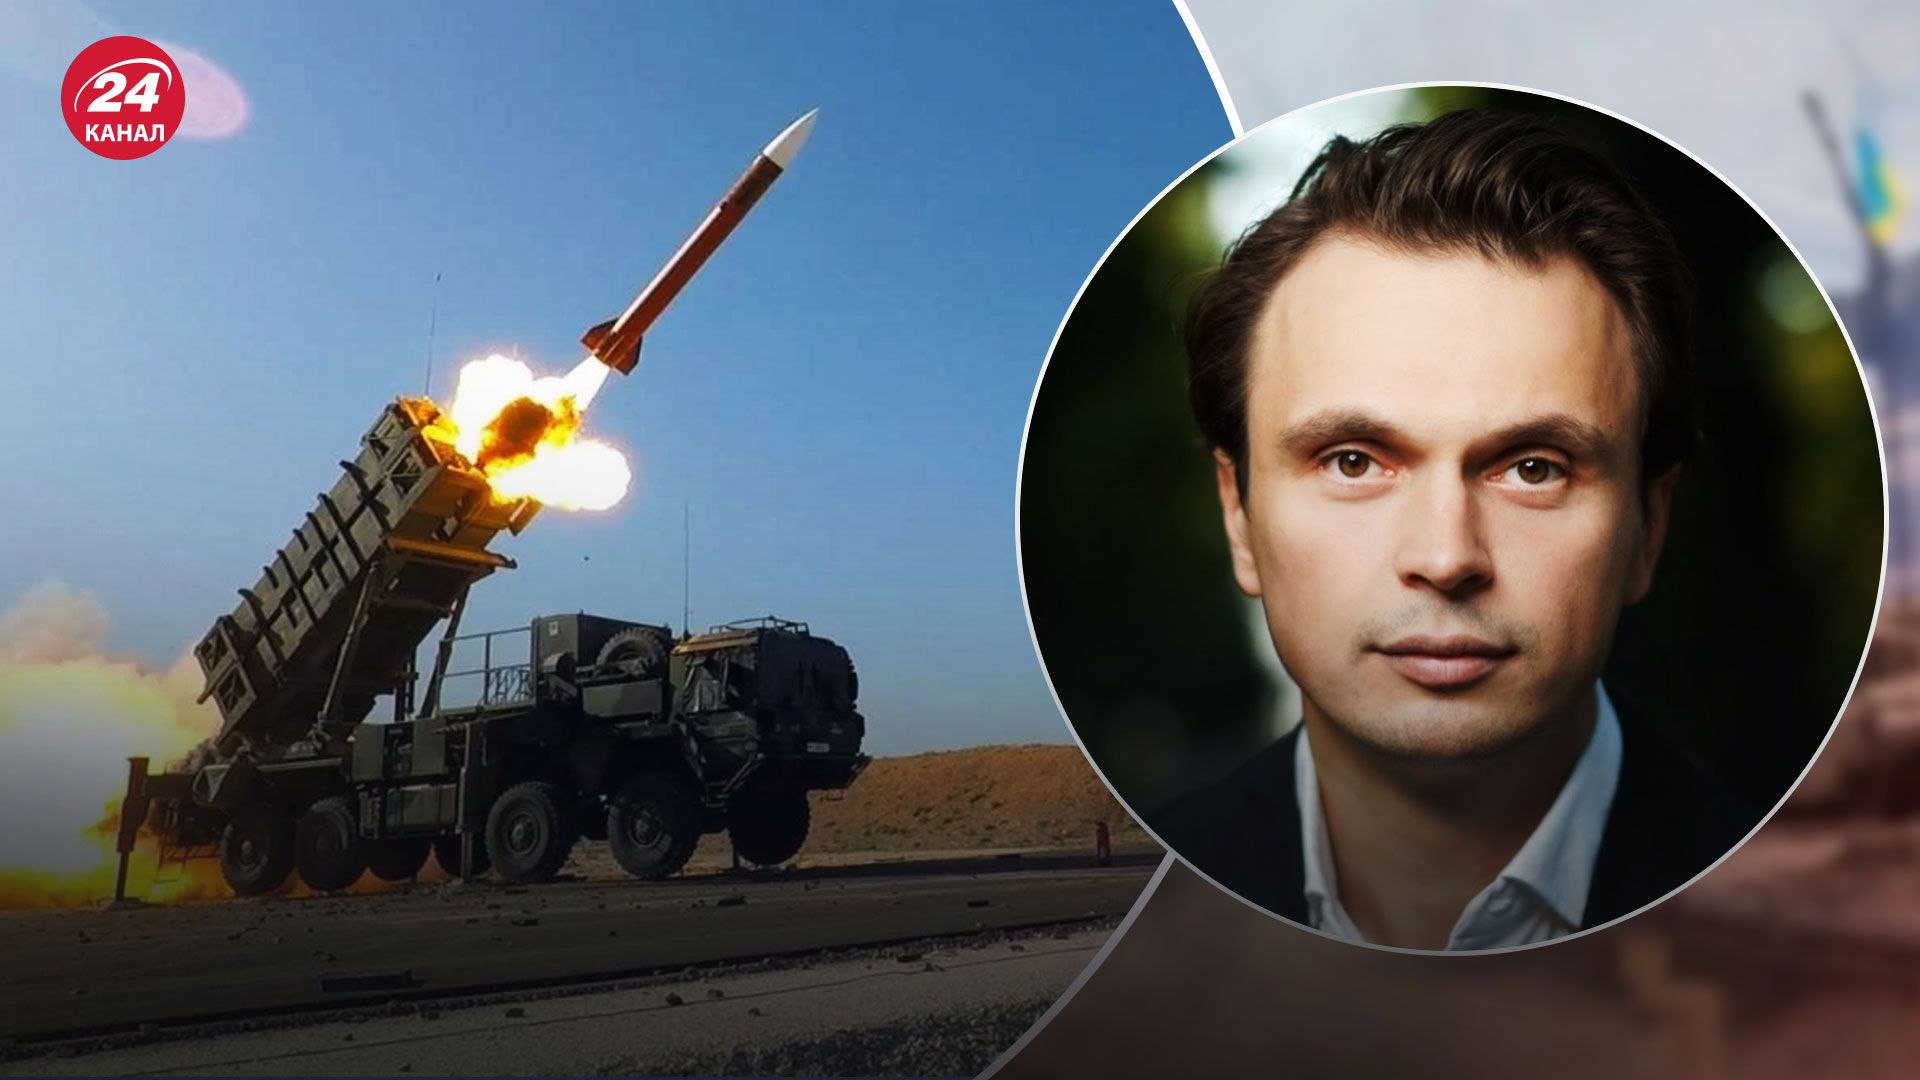 Patriot для Украины – политолог объяснил отказ Германии предоставить системы ПВО Киеву - 24 Канал